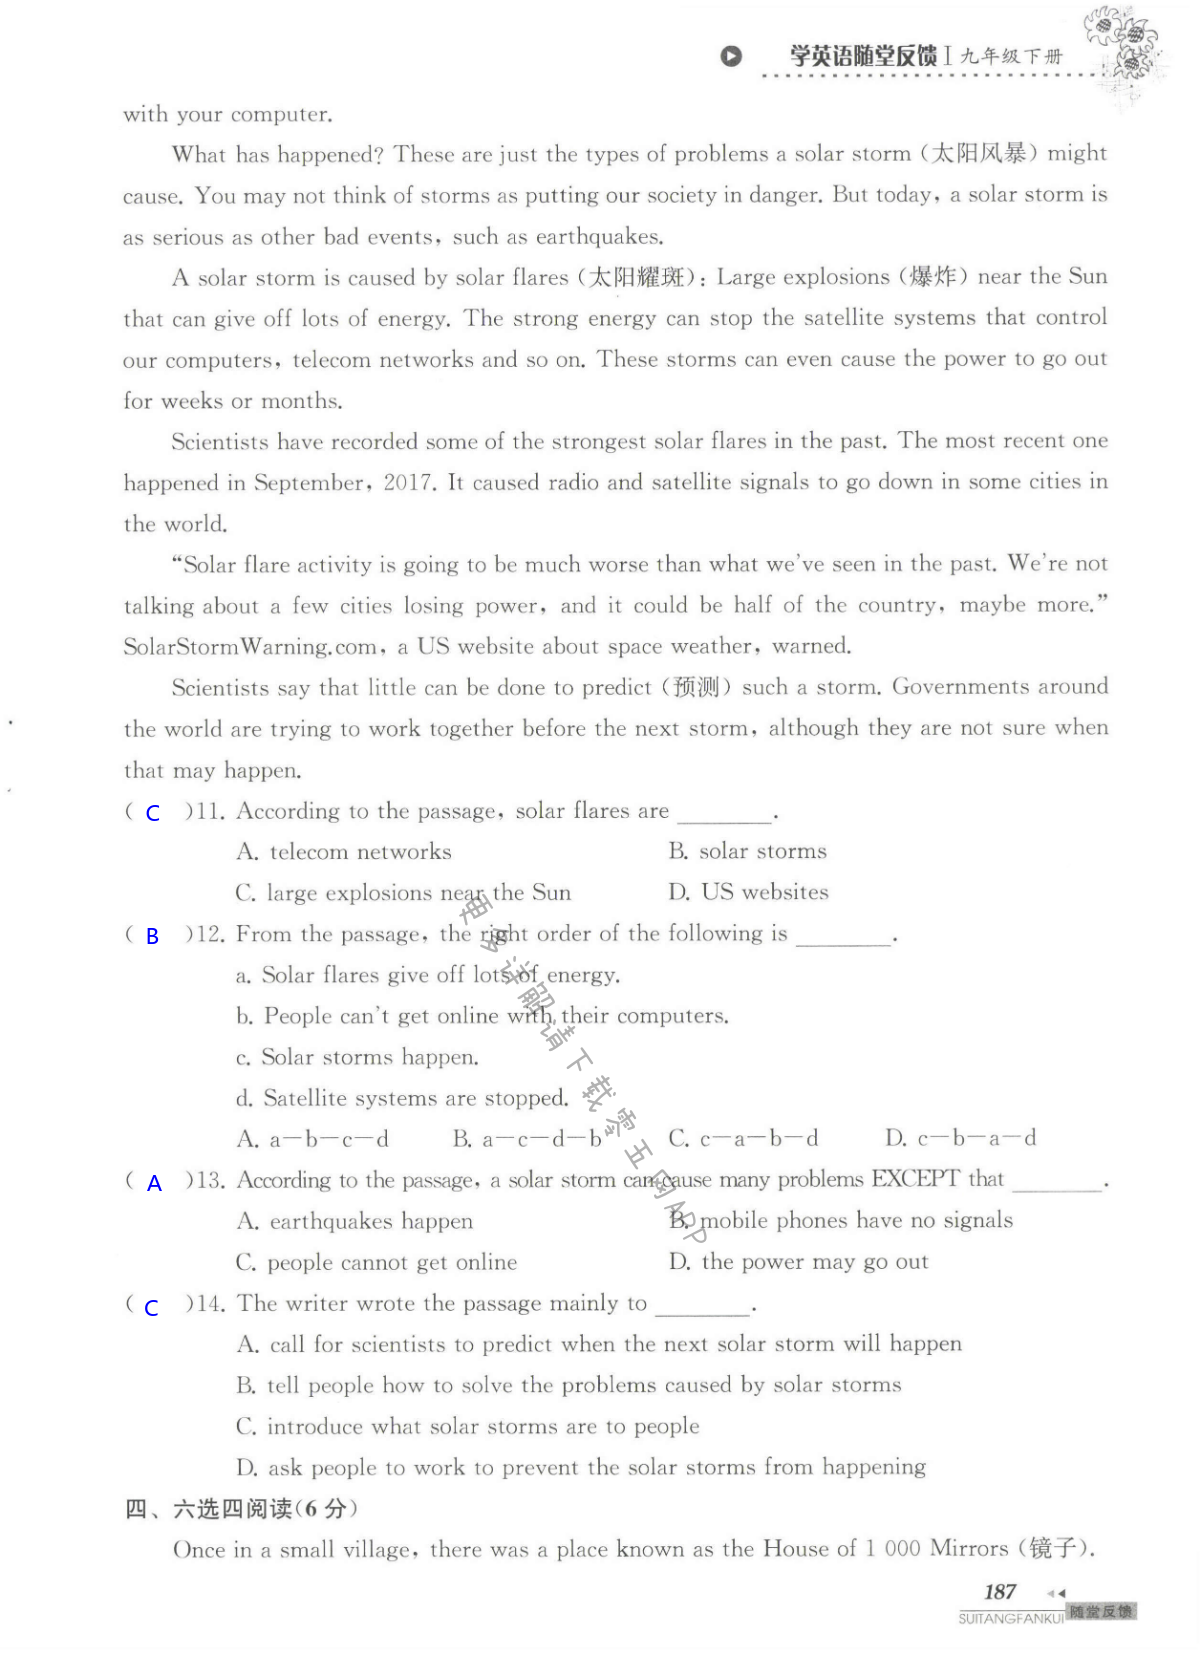 单元综合测试卷 Test for Unit 4 of 9B - 第187页